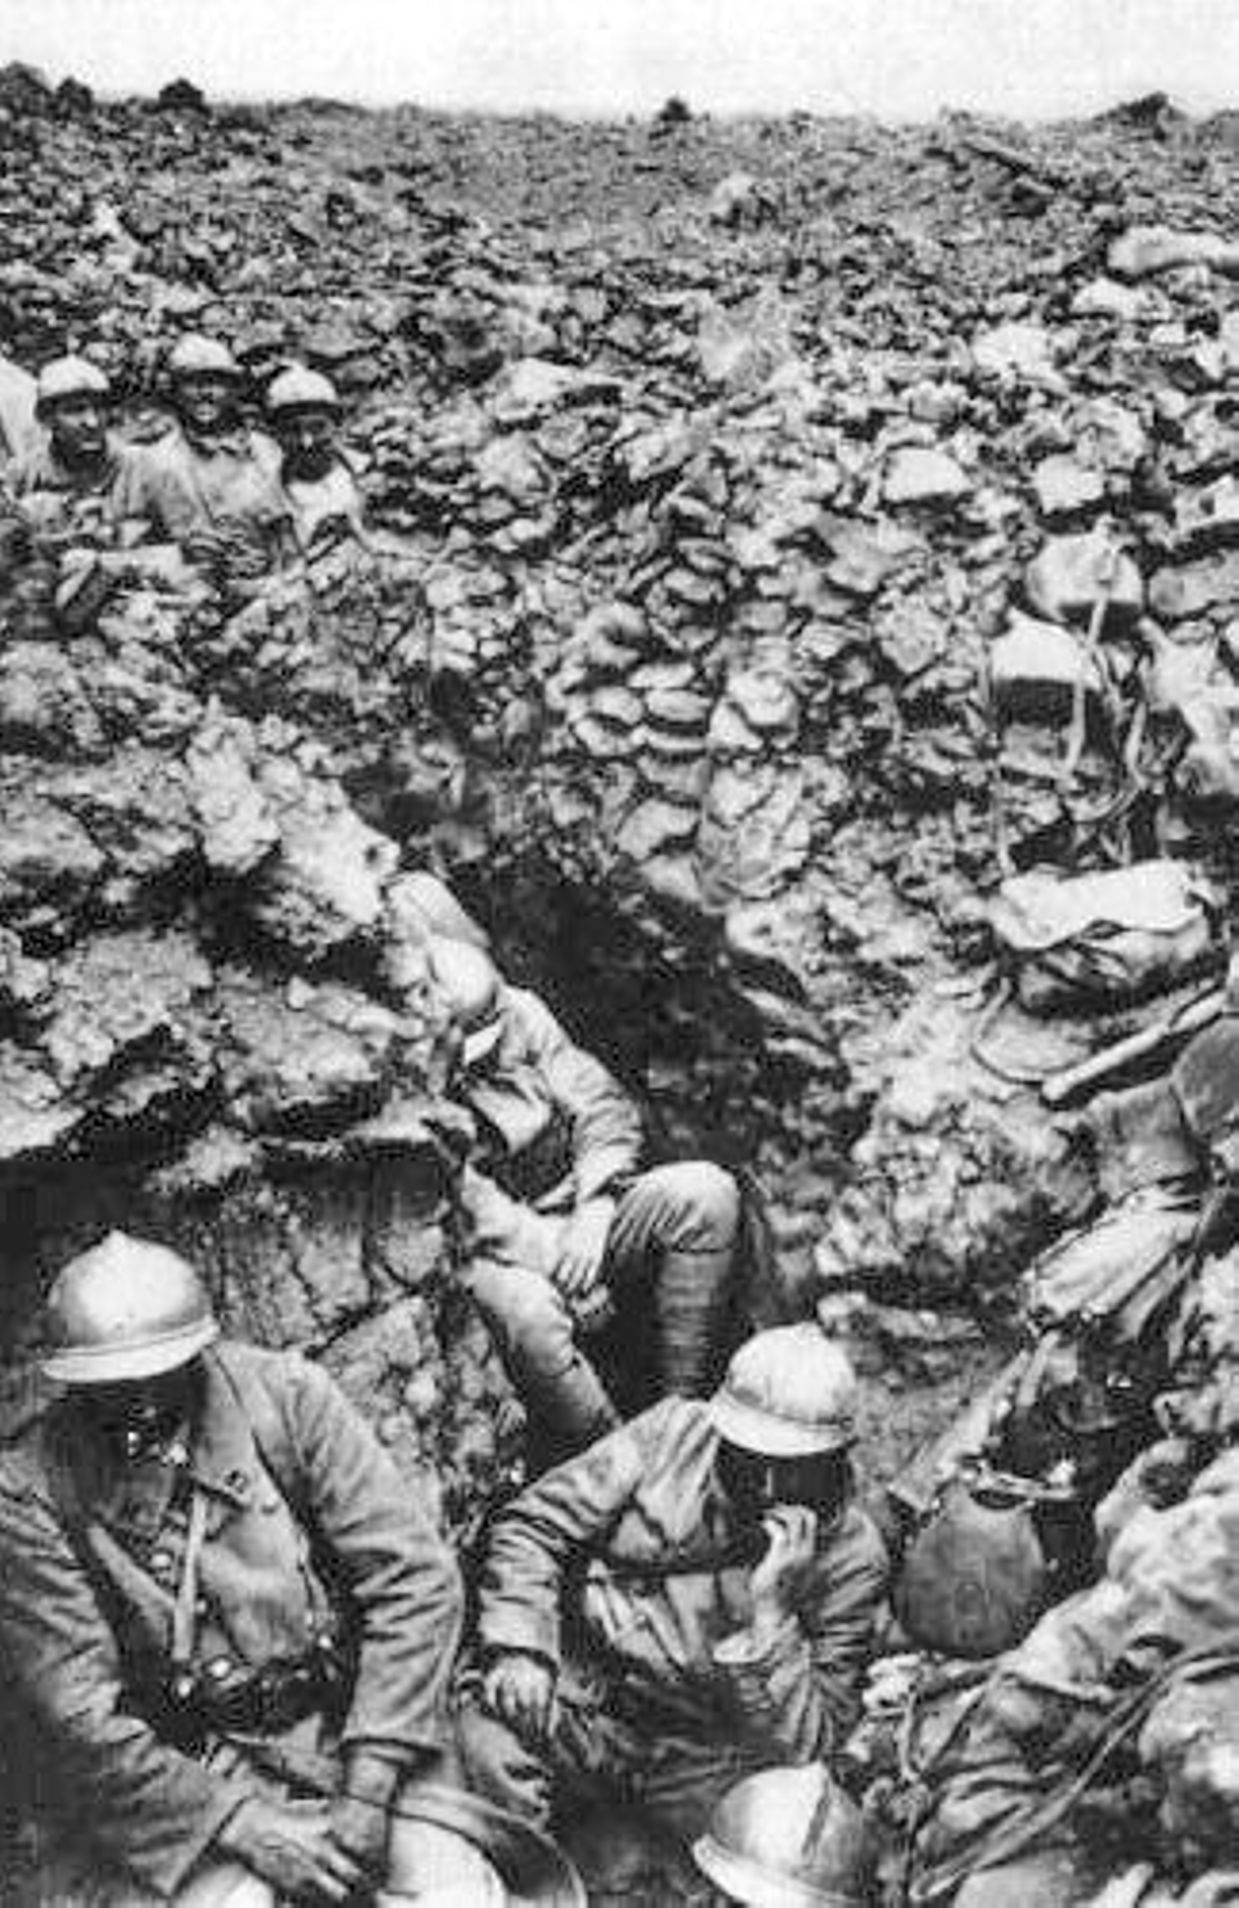 Soldats français du 87e régiment dans les tranchées, Verdun 1916. 